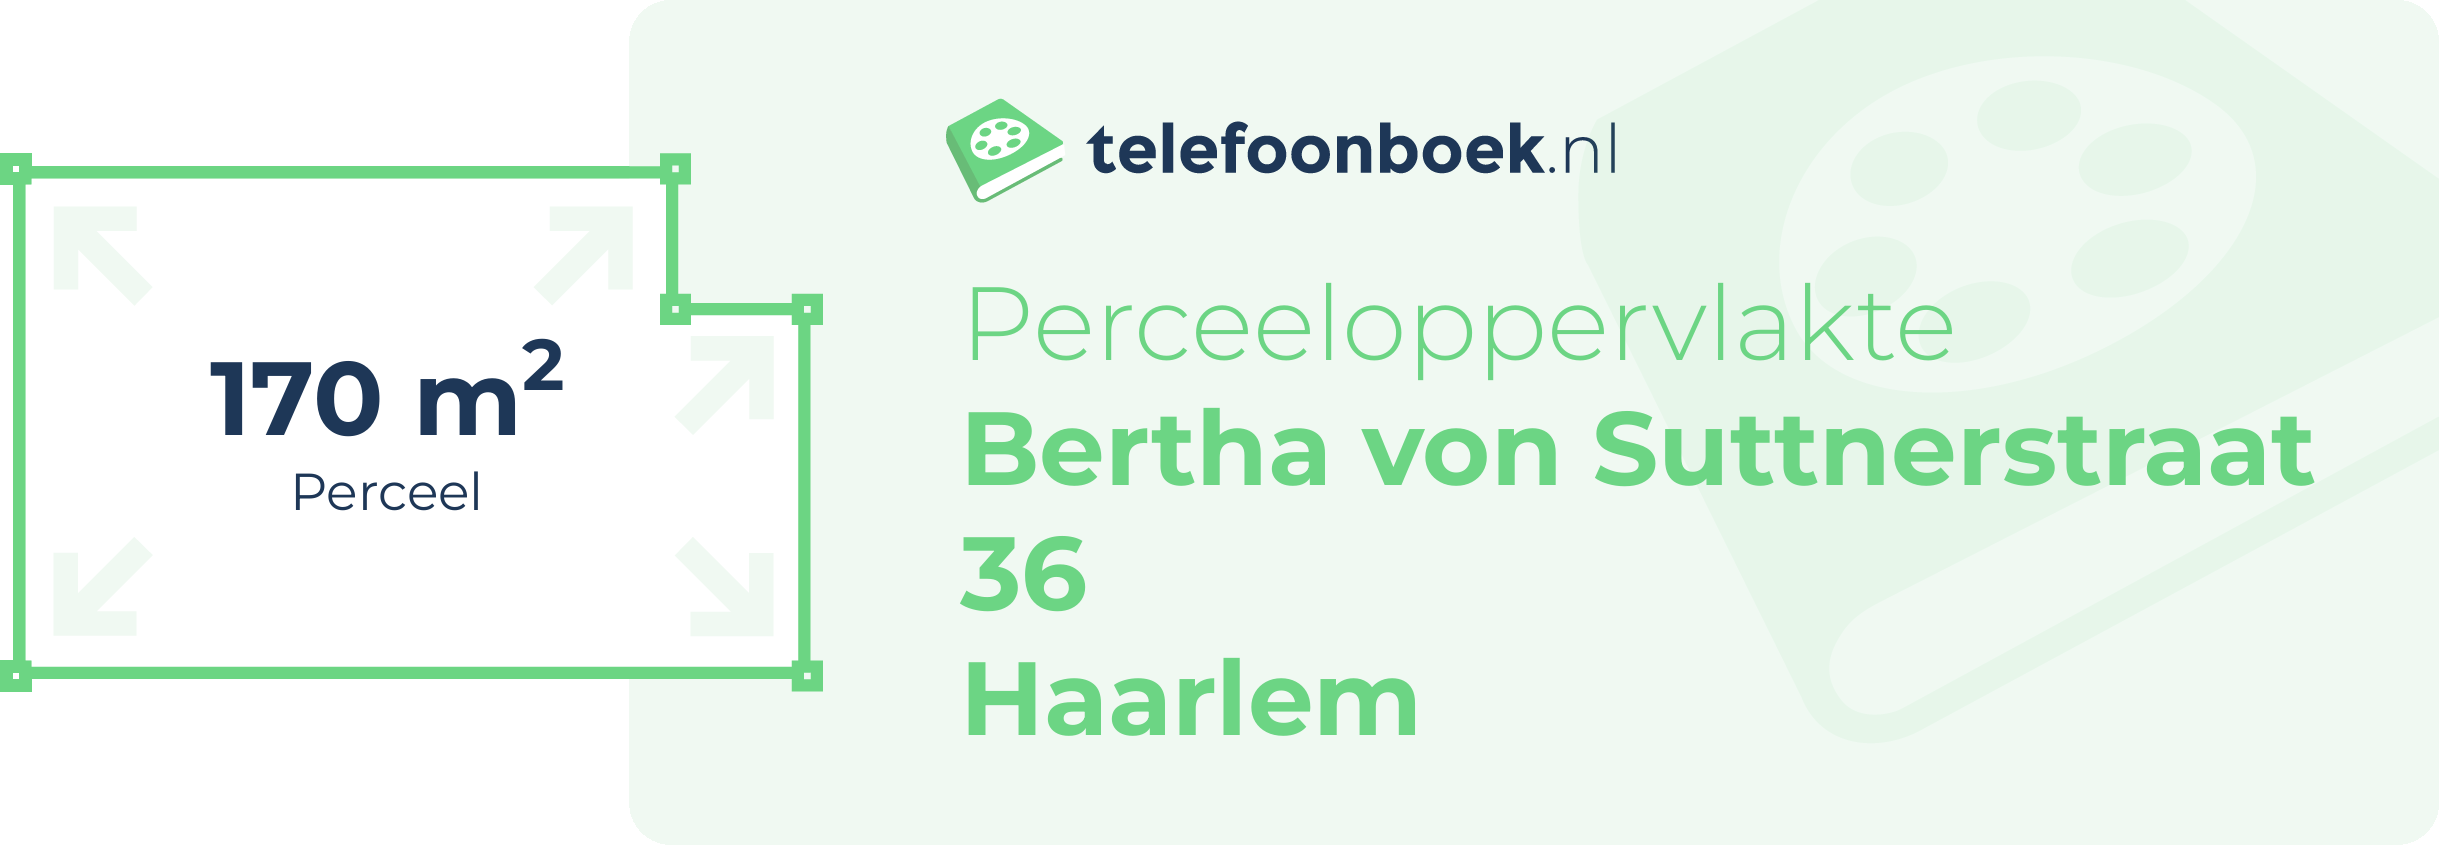 Perceeloppervlakte Bertha Von Suttnerstraat 36 Haarlem